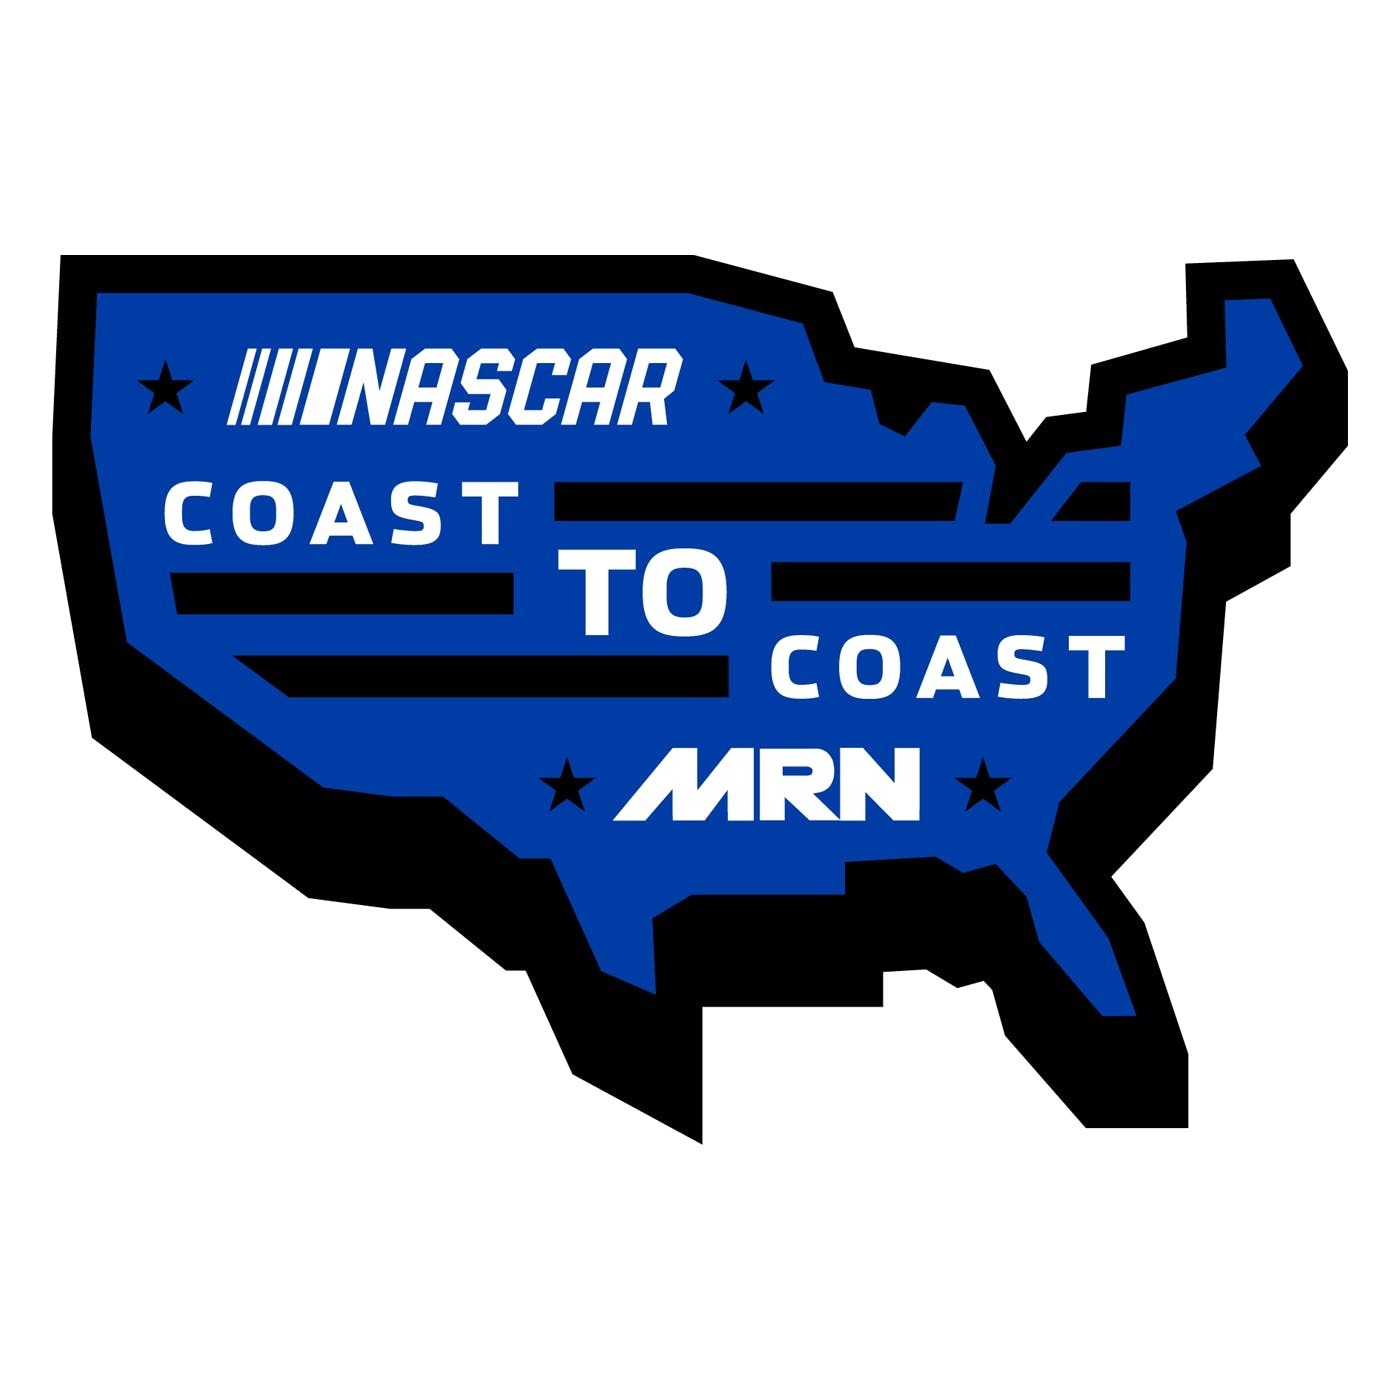 NASCAR Coast to Coast - May 29, 2019